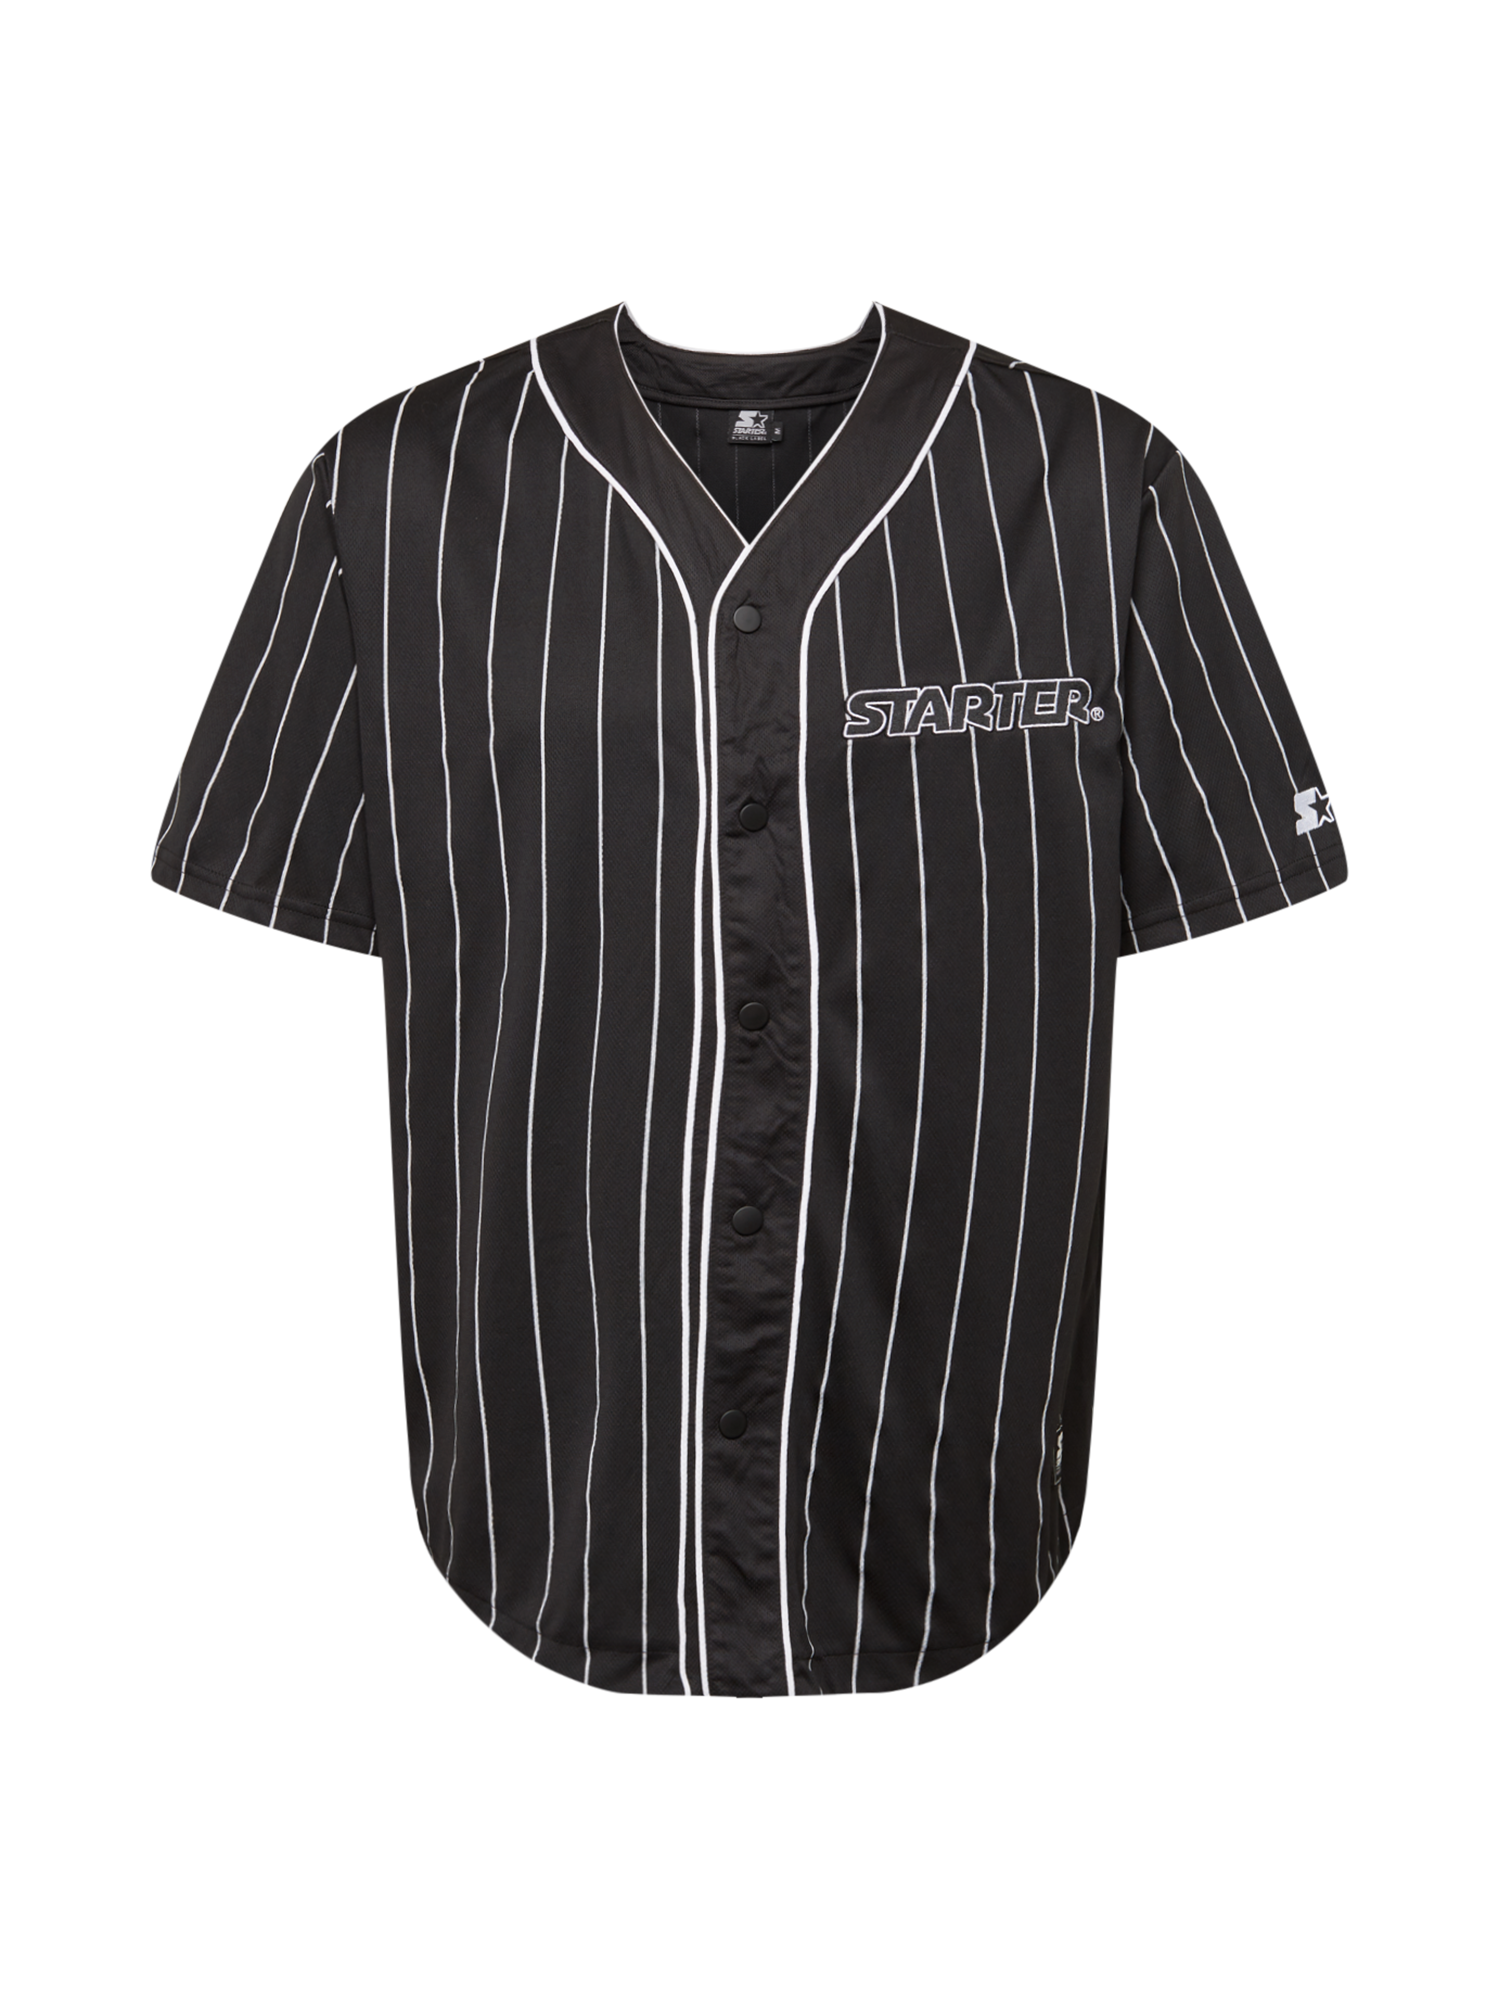 Odzież Mężczyźni Starter Black Label Koszula w kolorze Czarnym 